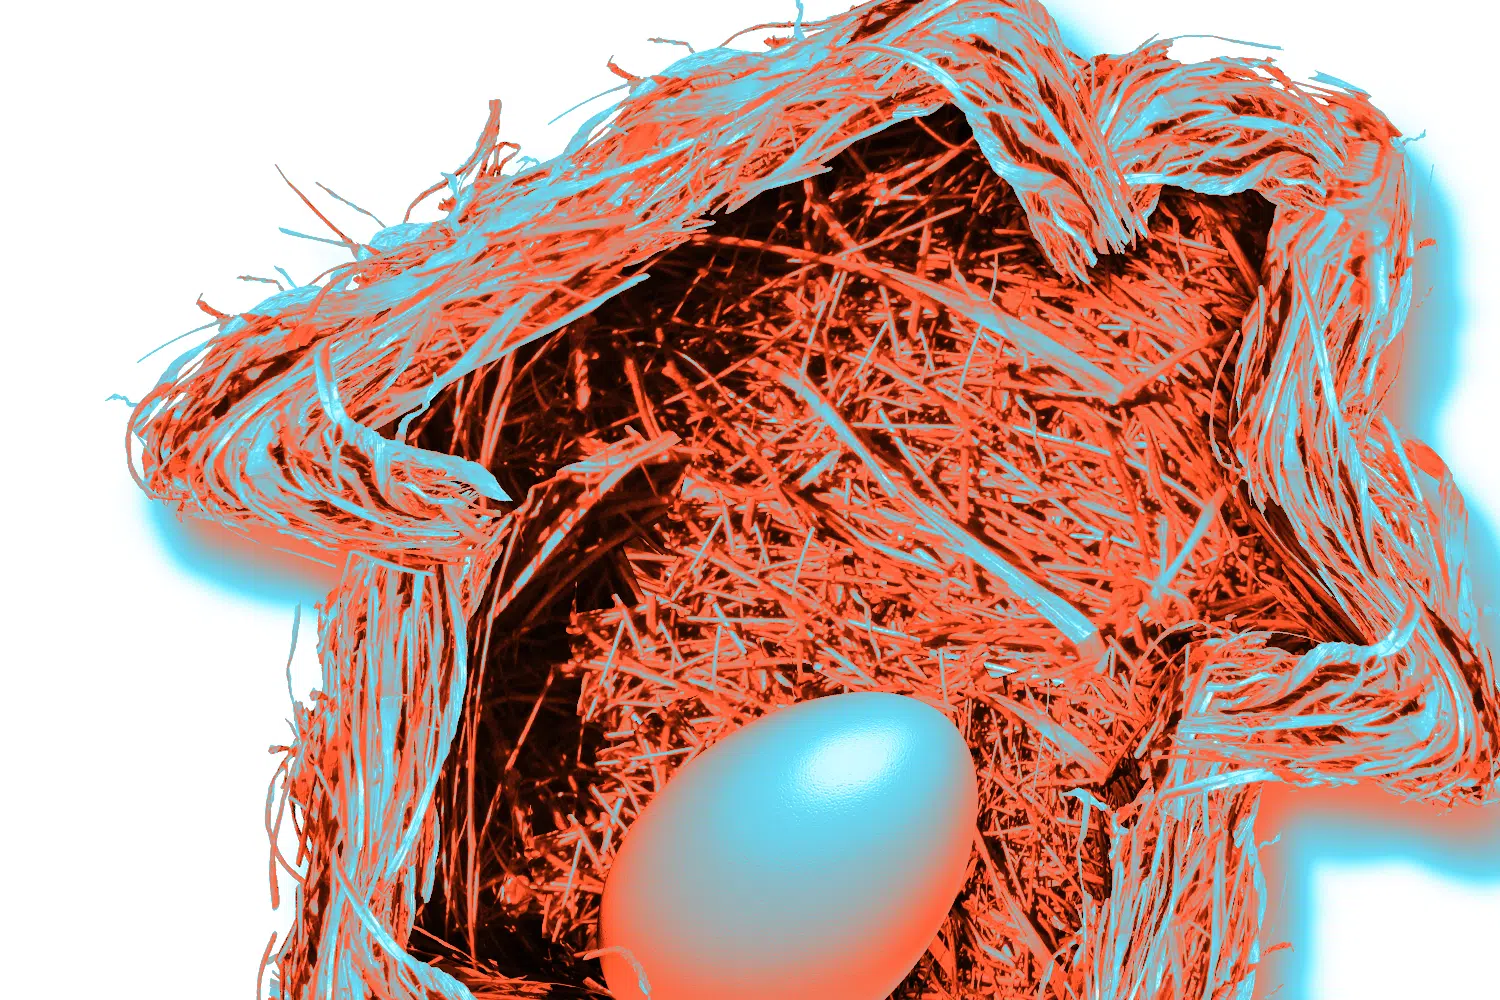 bird's nest with egg